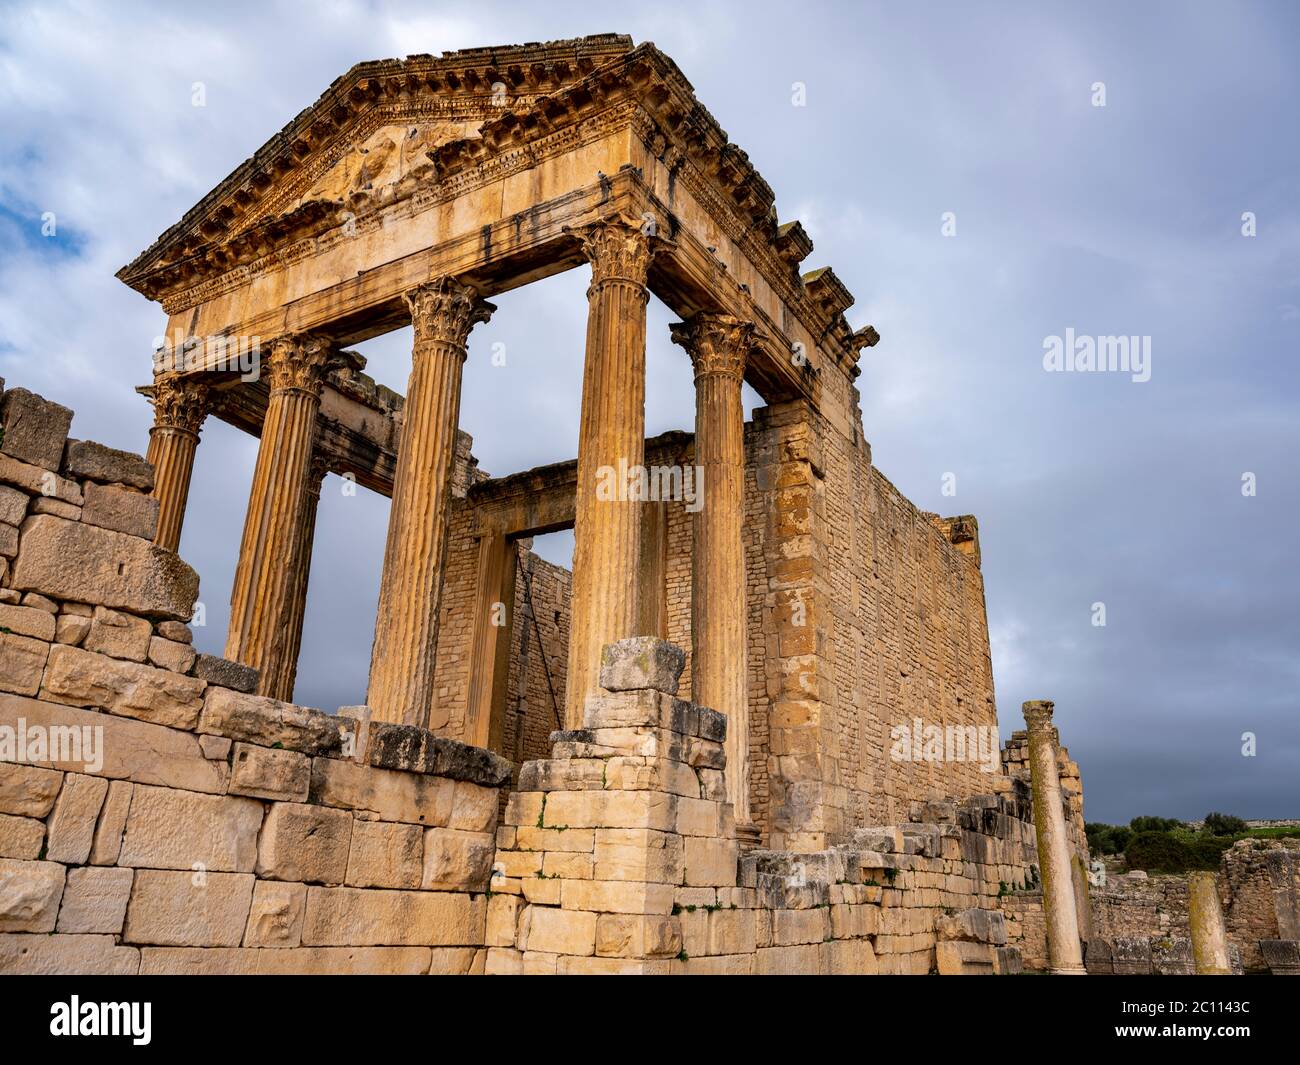 Le Temple de Jupiter ou le Capitole, le principal bâtiment debout de l'ancien site archéologique romain de Dougga (Thugga), Tunisie Banque D'Images